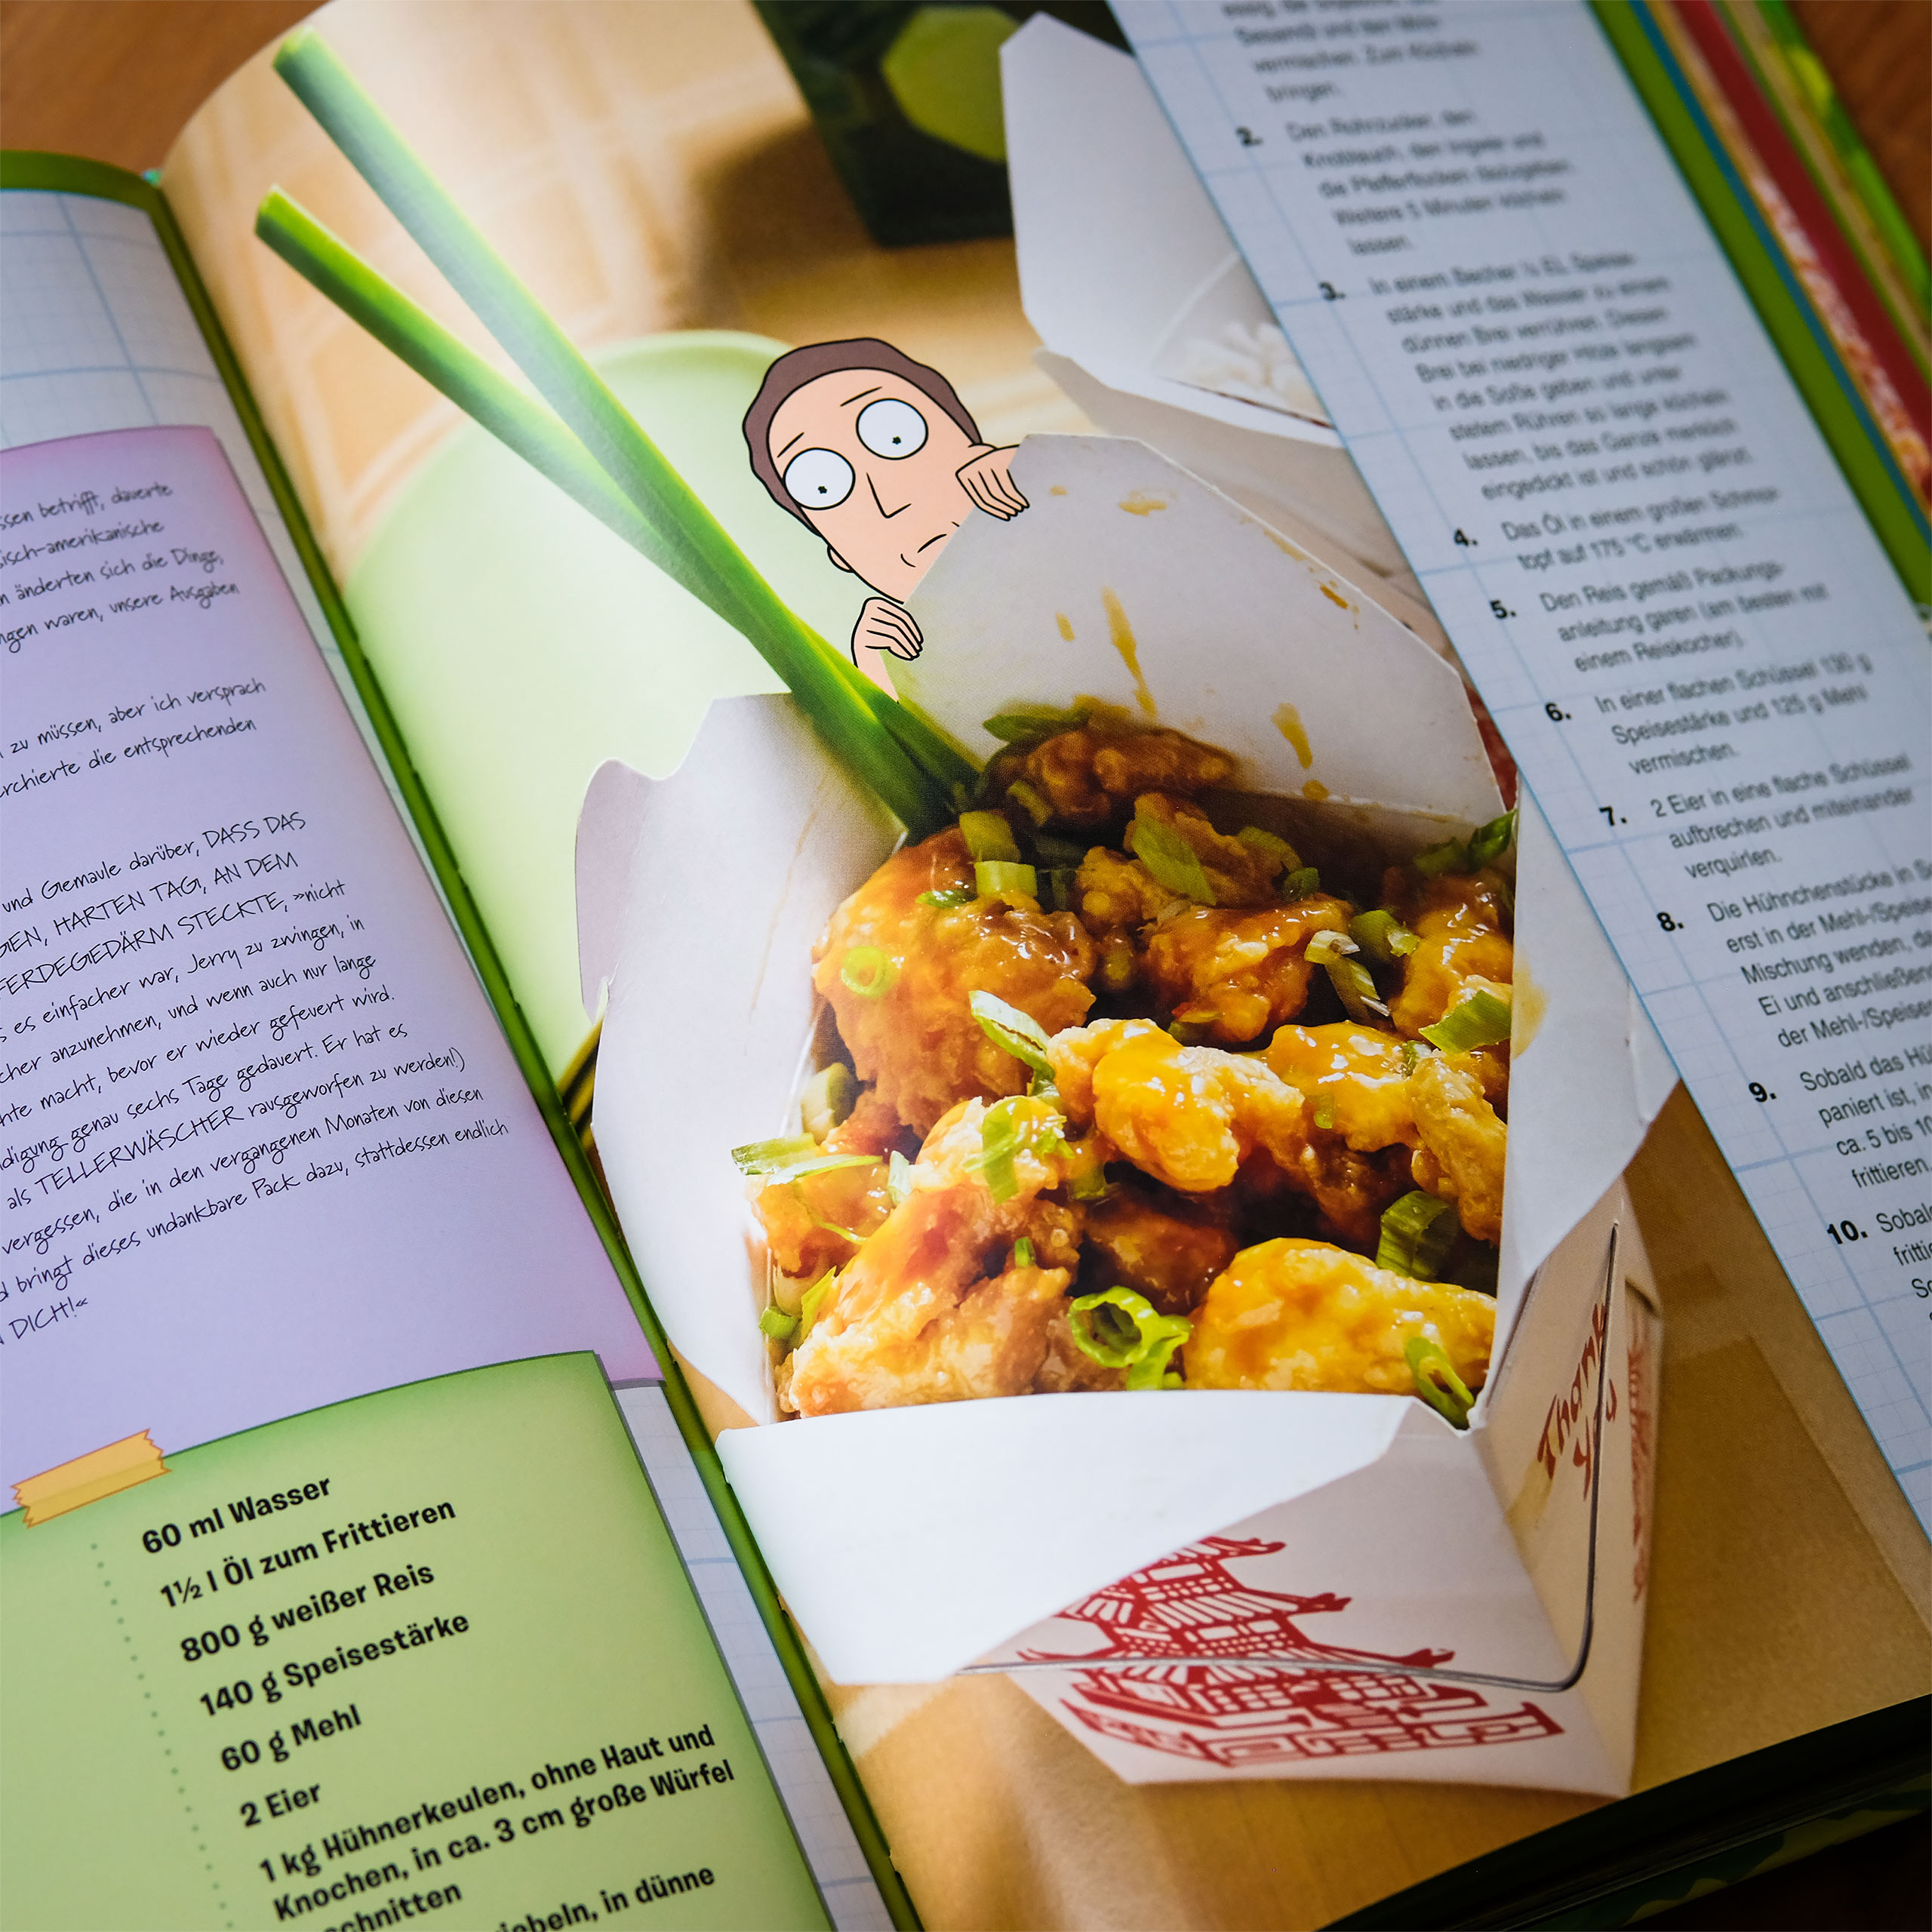 Rick and Morty - Le livre de cuisine officiel